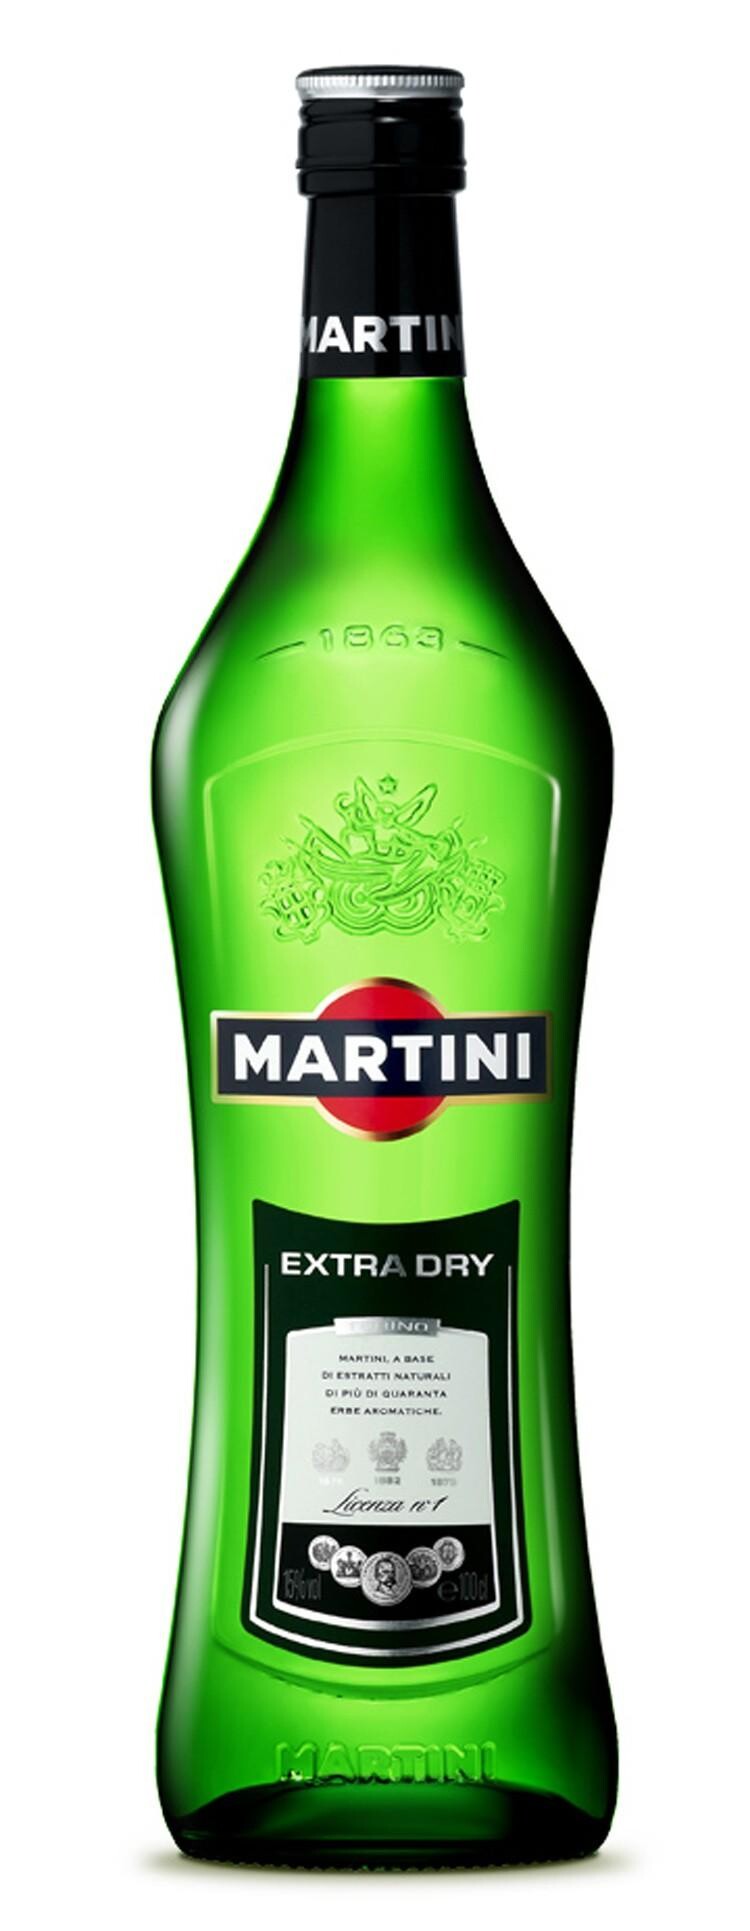 Martini Dry 75cl 15% aperitif